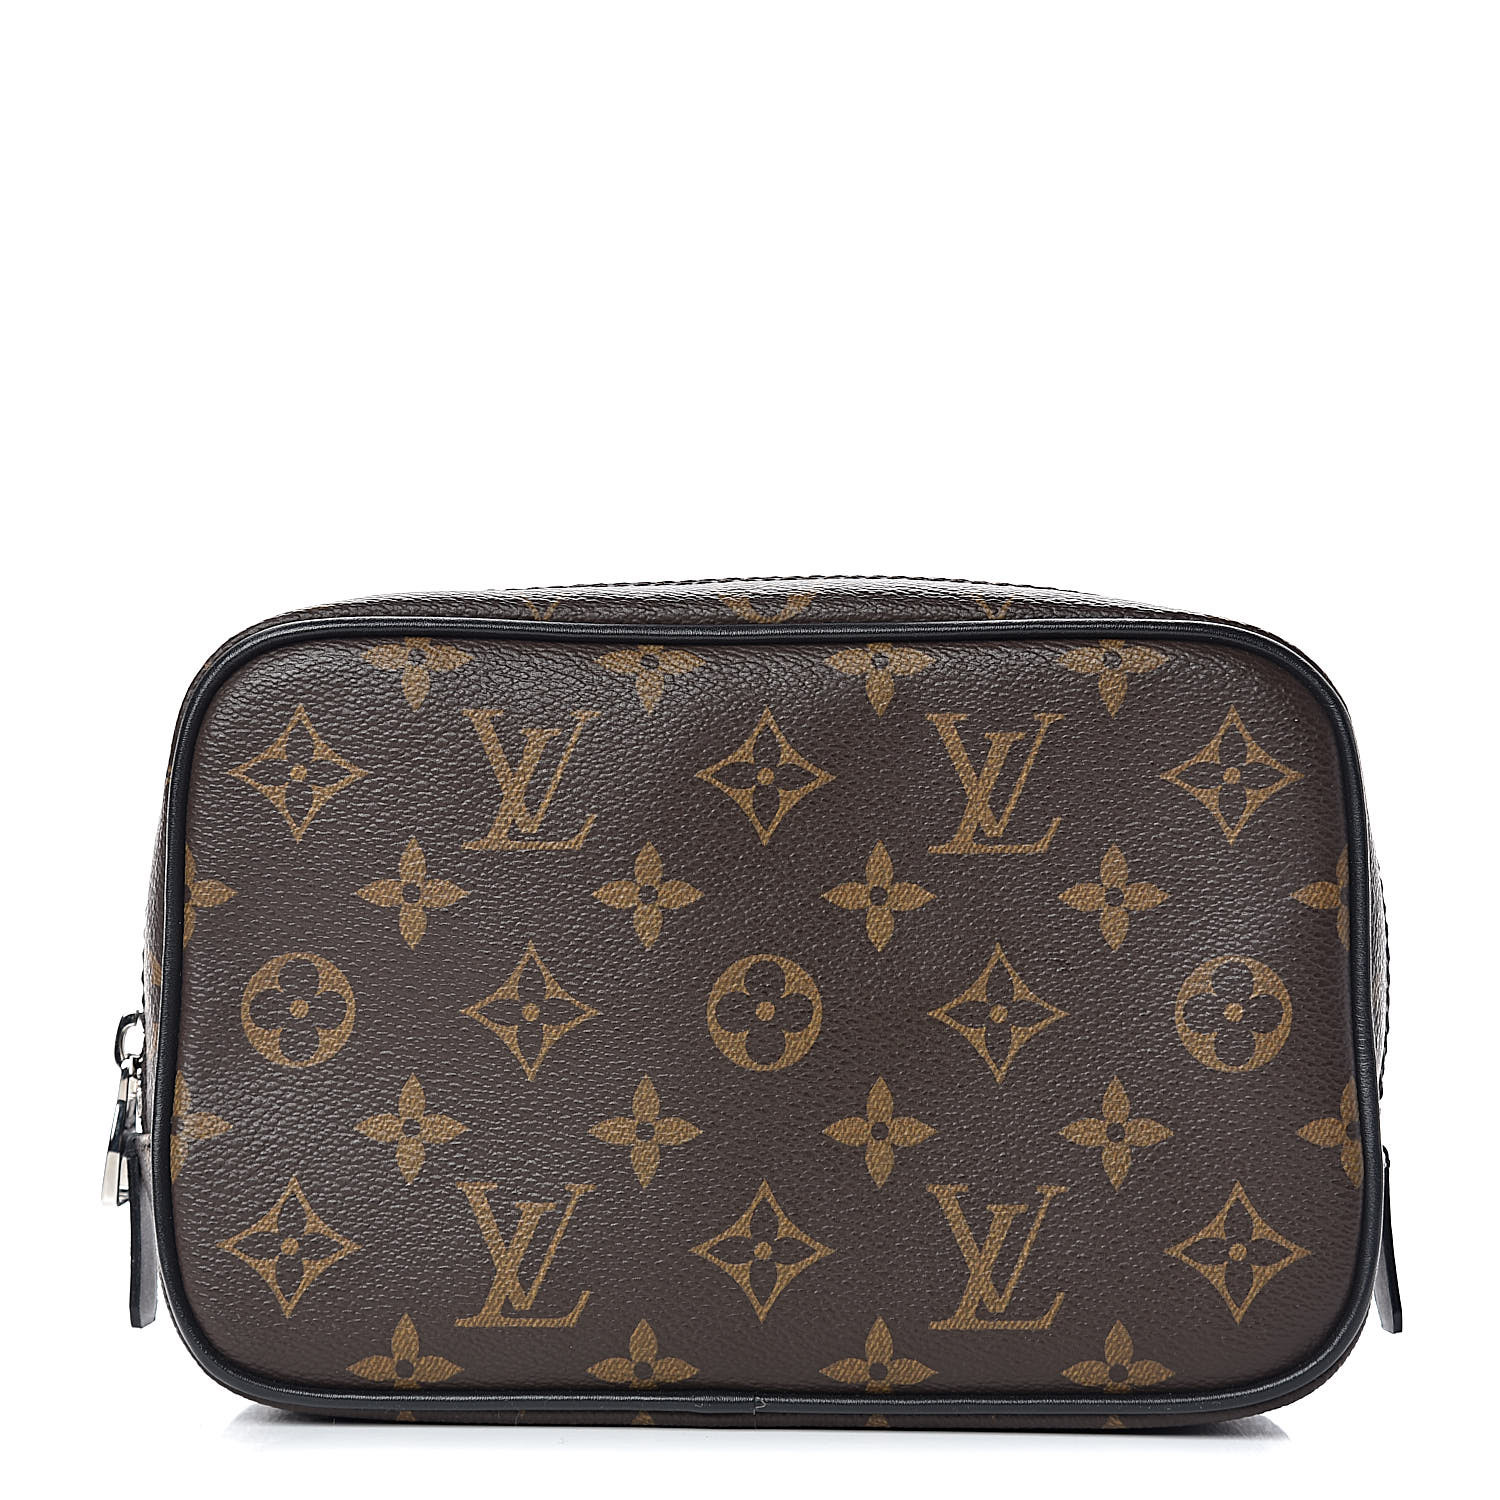 Louis Vuitton, a monogram canvas toilet bag and a sunglasses case. -  Bukowskis